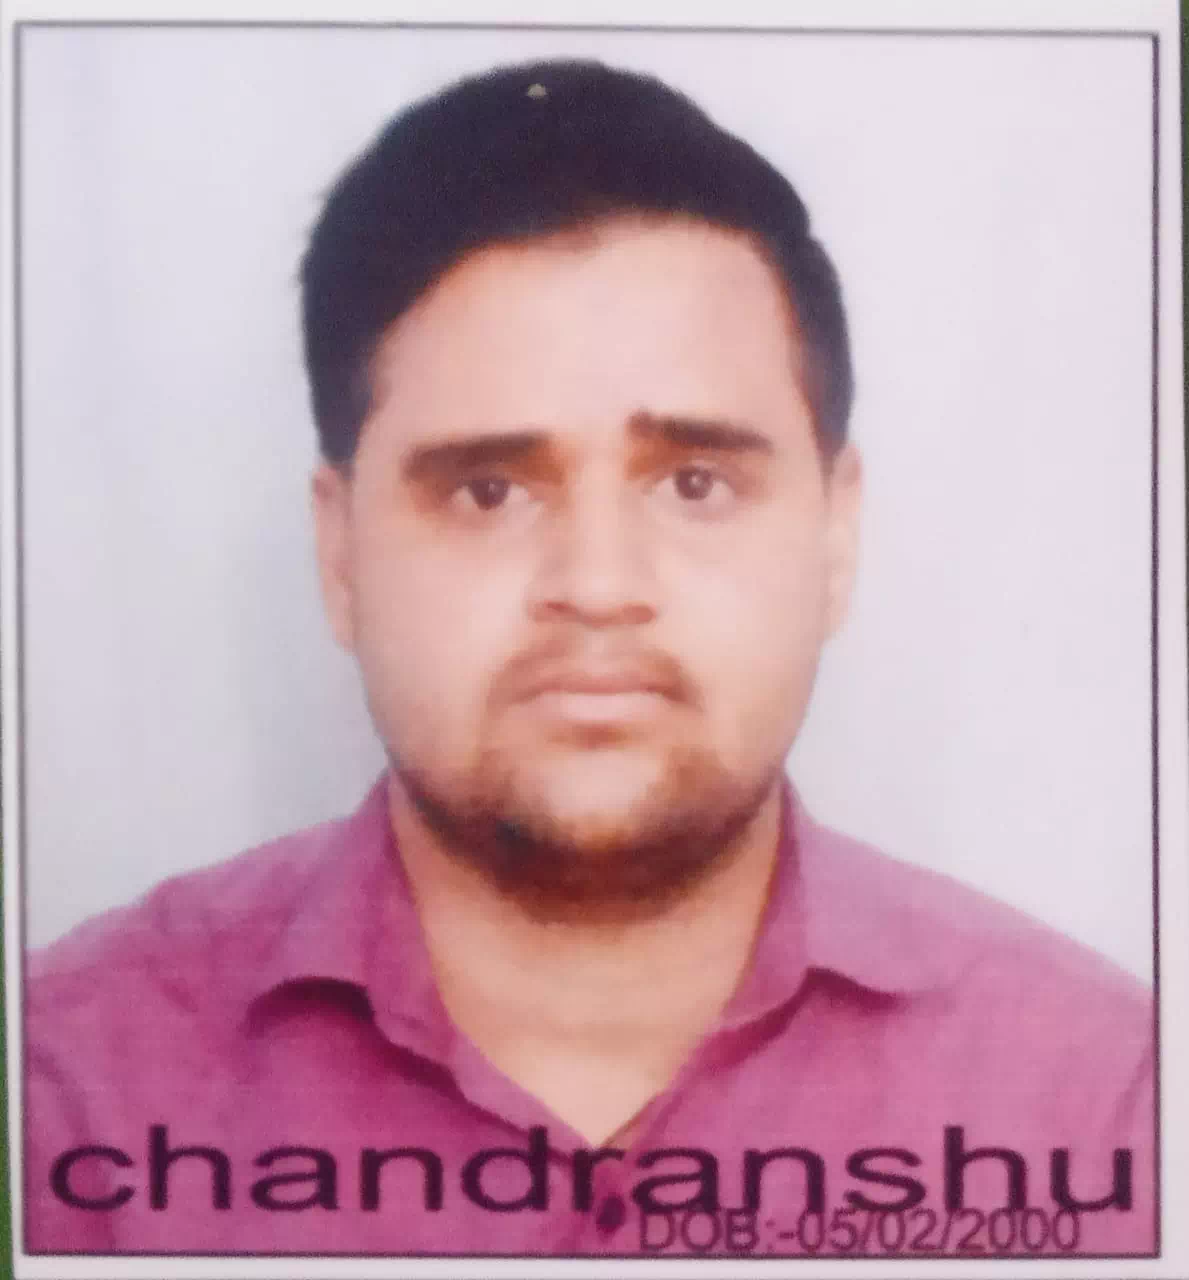 Chandrashu Choubey